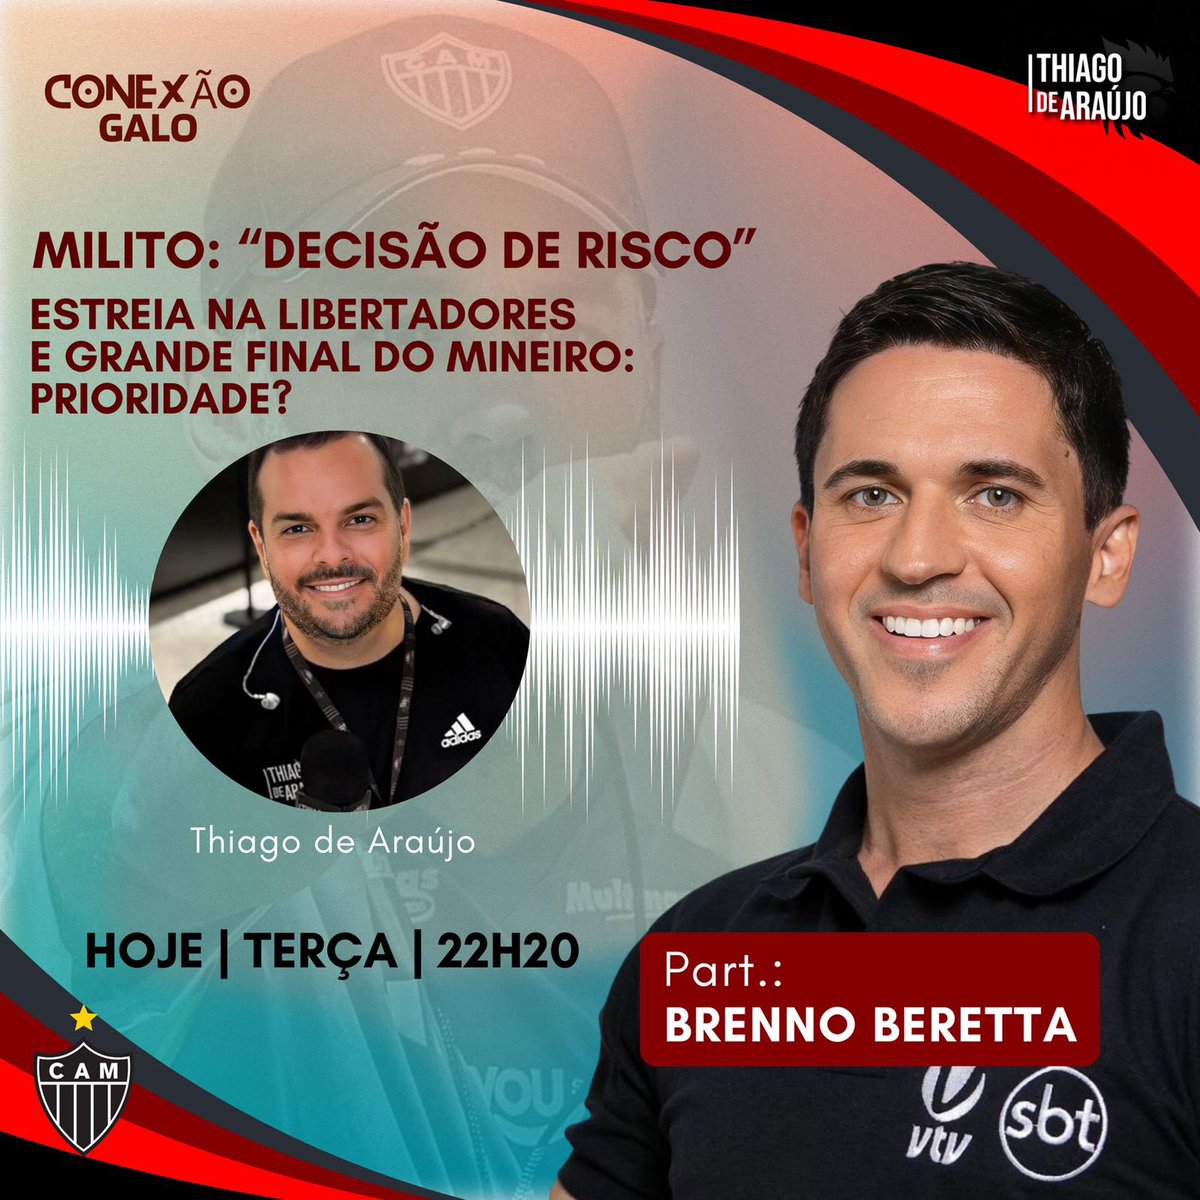 Estarei ao vivo agora, no YouTube, com meu amigo @thdearaujo pra falar do #Atlético, da #Libertadores e da Final do Mineiro: youtube.com/live/6efxB-IP5…